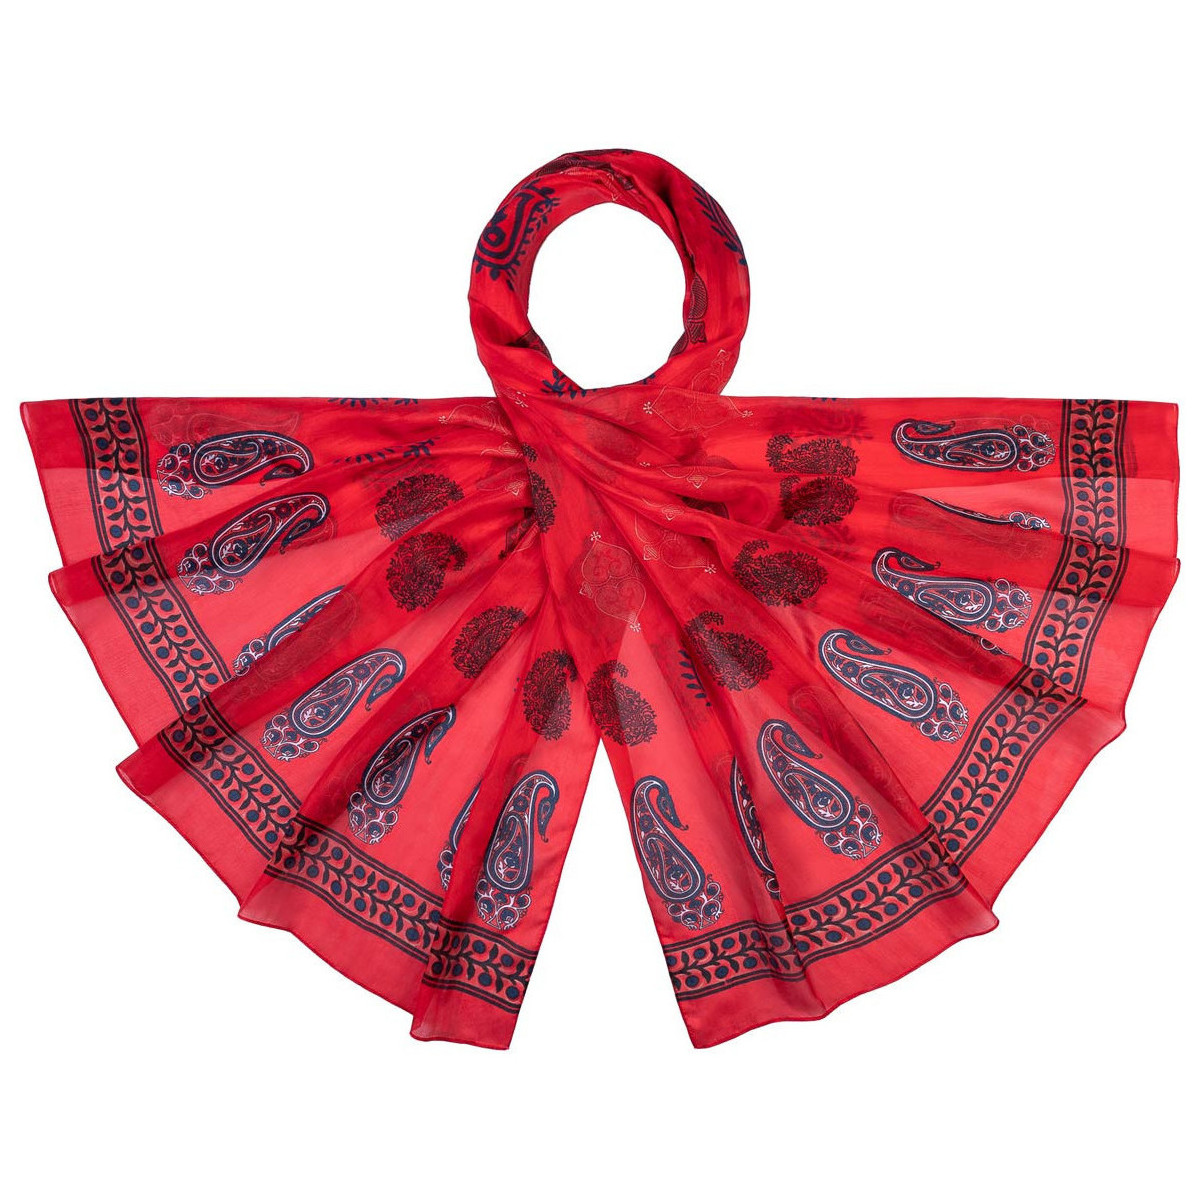 Accessoires textile Femme Echarpes / Etoles / Foulards Allée Du Foulard Etole soie Ganash Rouge